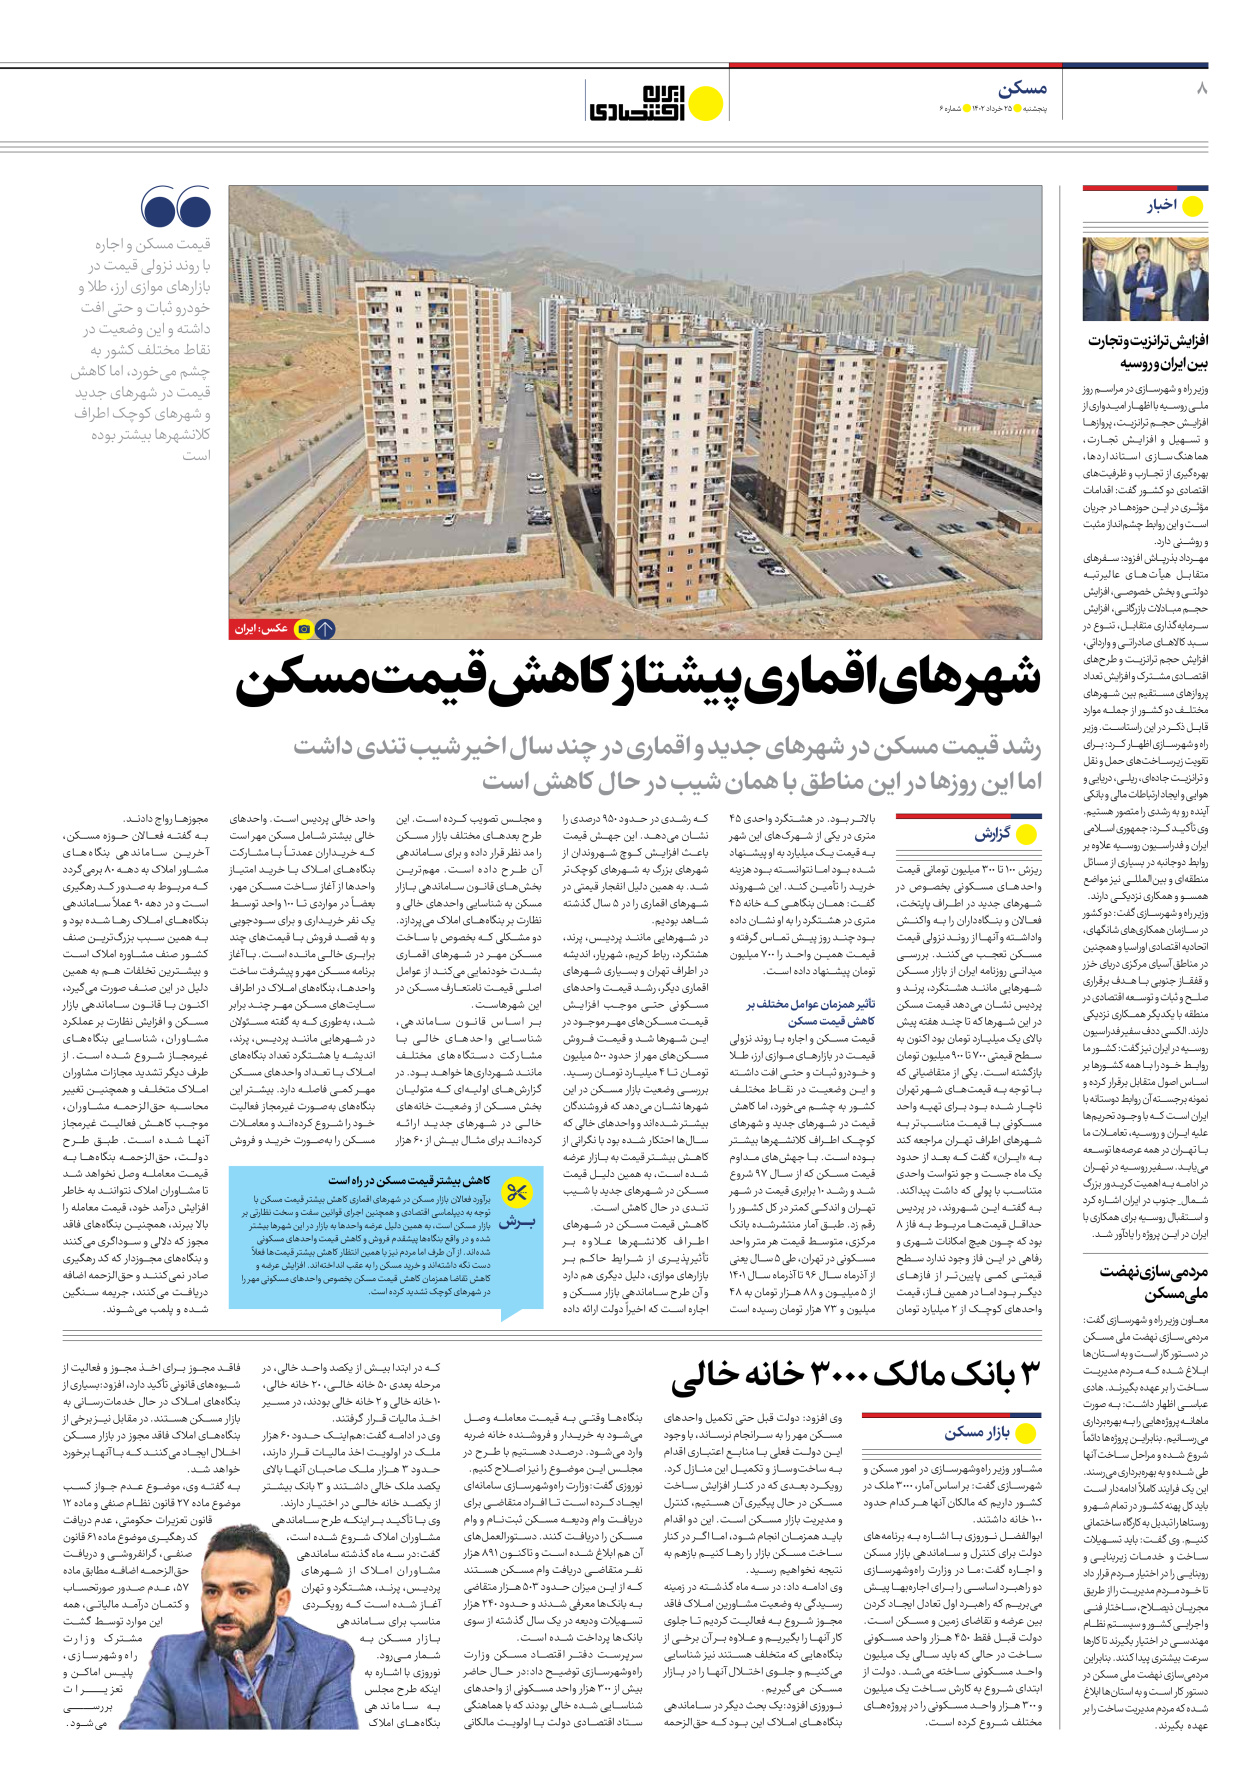 روزنامه ایران اقتصادی - شماره شش - ۲۵ خرداد ۱۴۰۲ - صفحه ۸